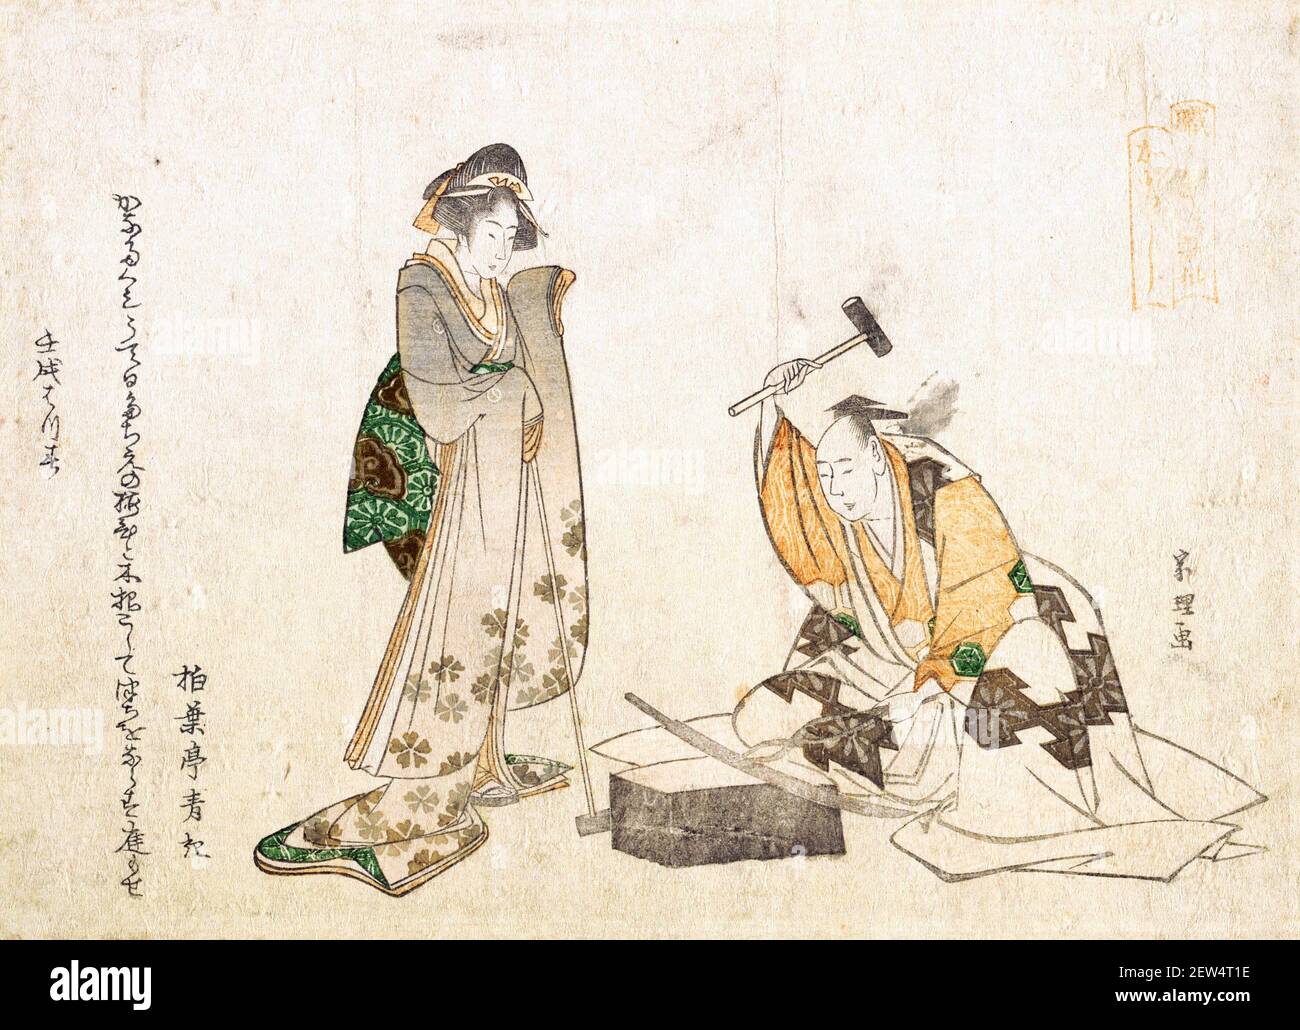 Hokusai. L'espadon par l'artiste et graveur japonais Katsushika Hokusai (葛飾 北斎, c. 1760-1849), impression de blocs de bois (suribono), encre et couleur sur papier, 1802 Banque D'Images